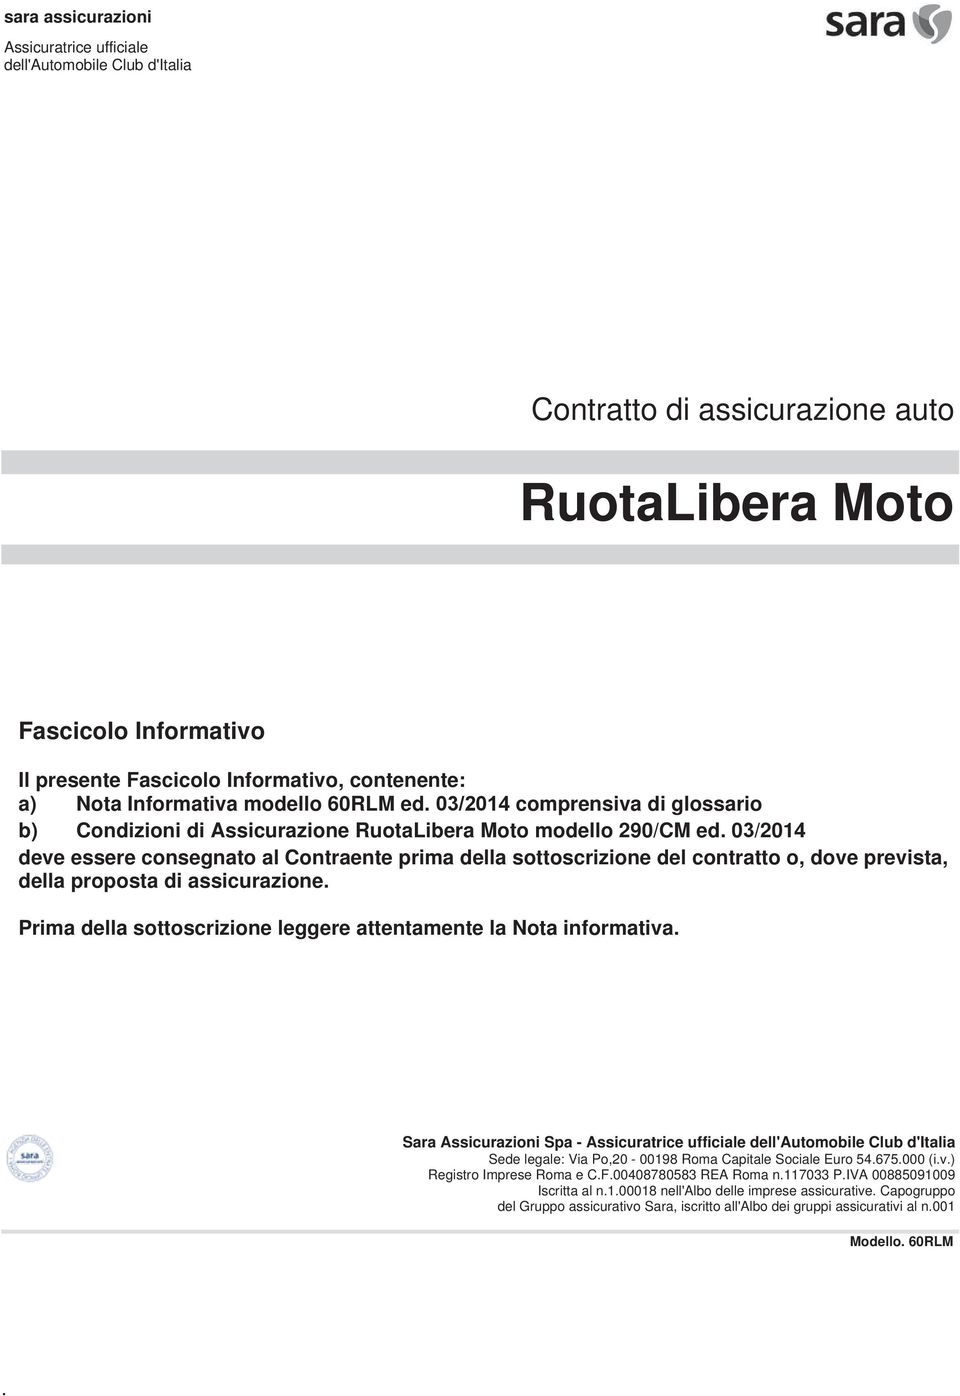 F +39 06 8475223 15 Iscritta al n.1.00018 nell'albo Assicuratrice ufficiale dell'automobile Club d'italia Sede legale: Via Po,20-00198 Roma Capitale Sociale Euro 54.675.000 (i.v.